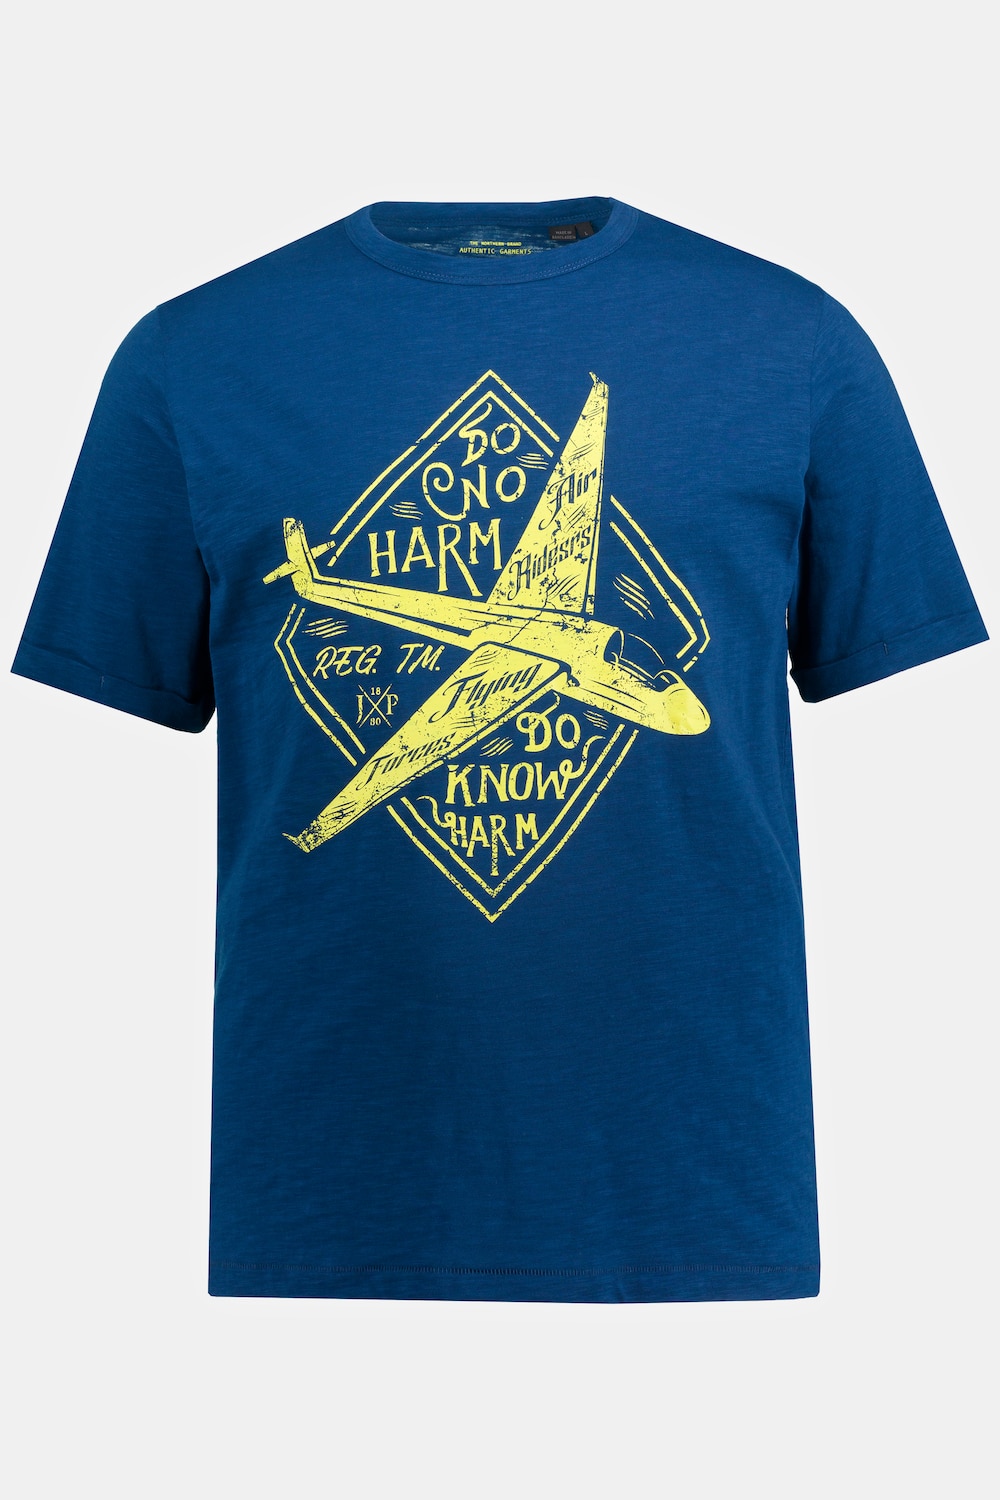 T-Shirt, Große Größen, Herren, blau, Größe: XXL, Baumwolle, JP1880 product